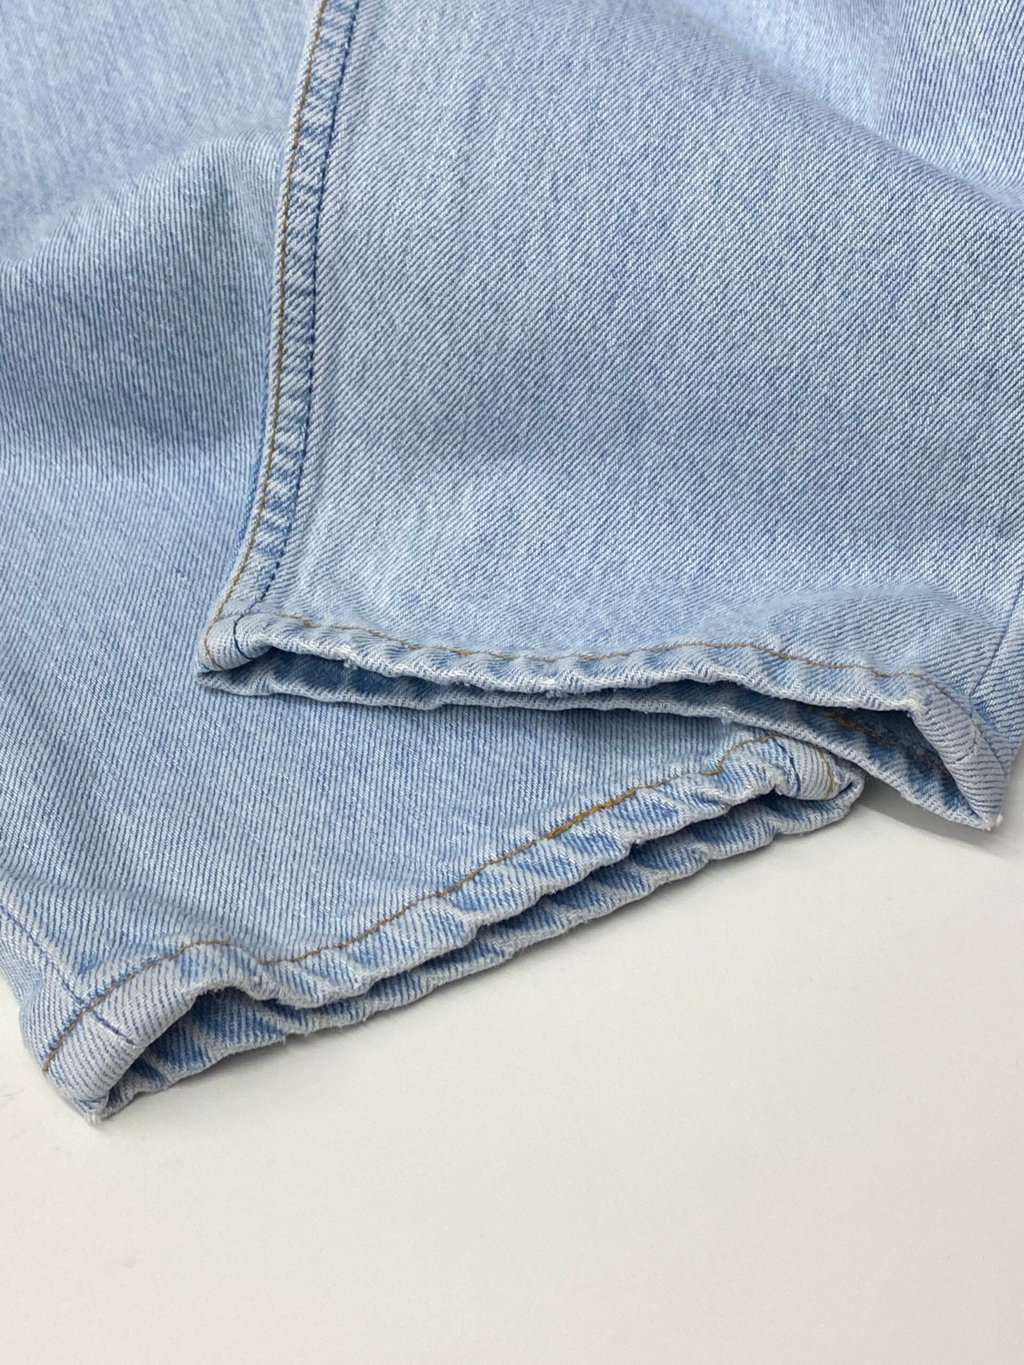 Vintage Levis 901 jeans 26.5 x 32 pale stonewash blue 90s - St Cyr Vintage